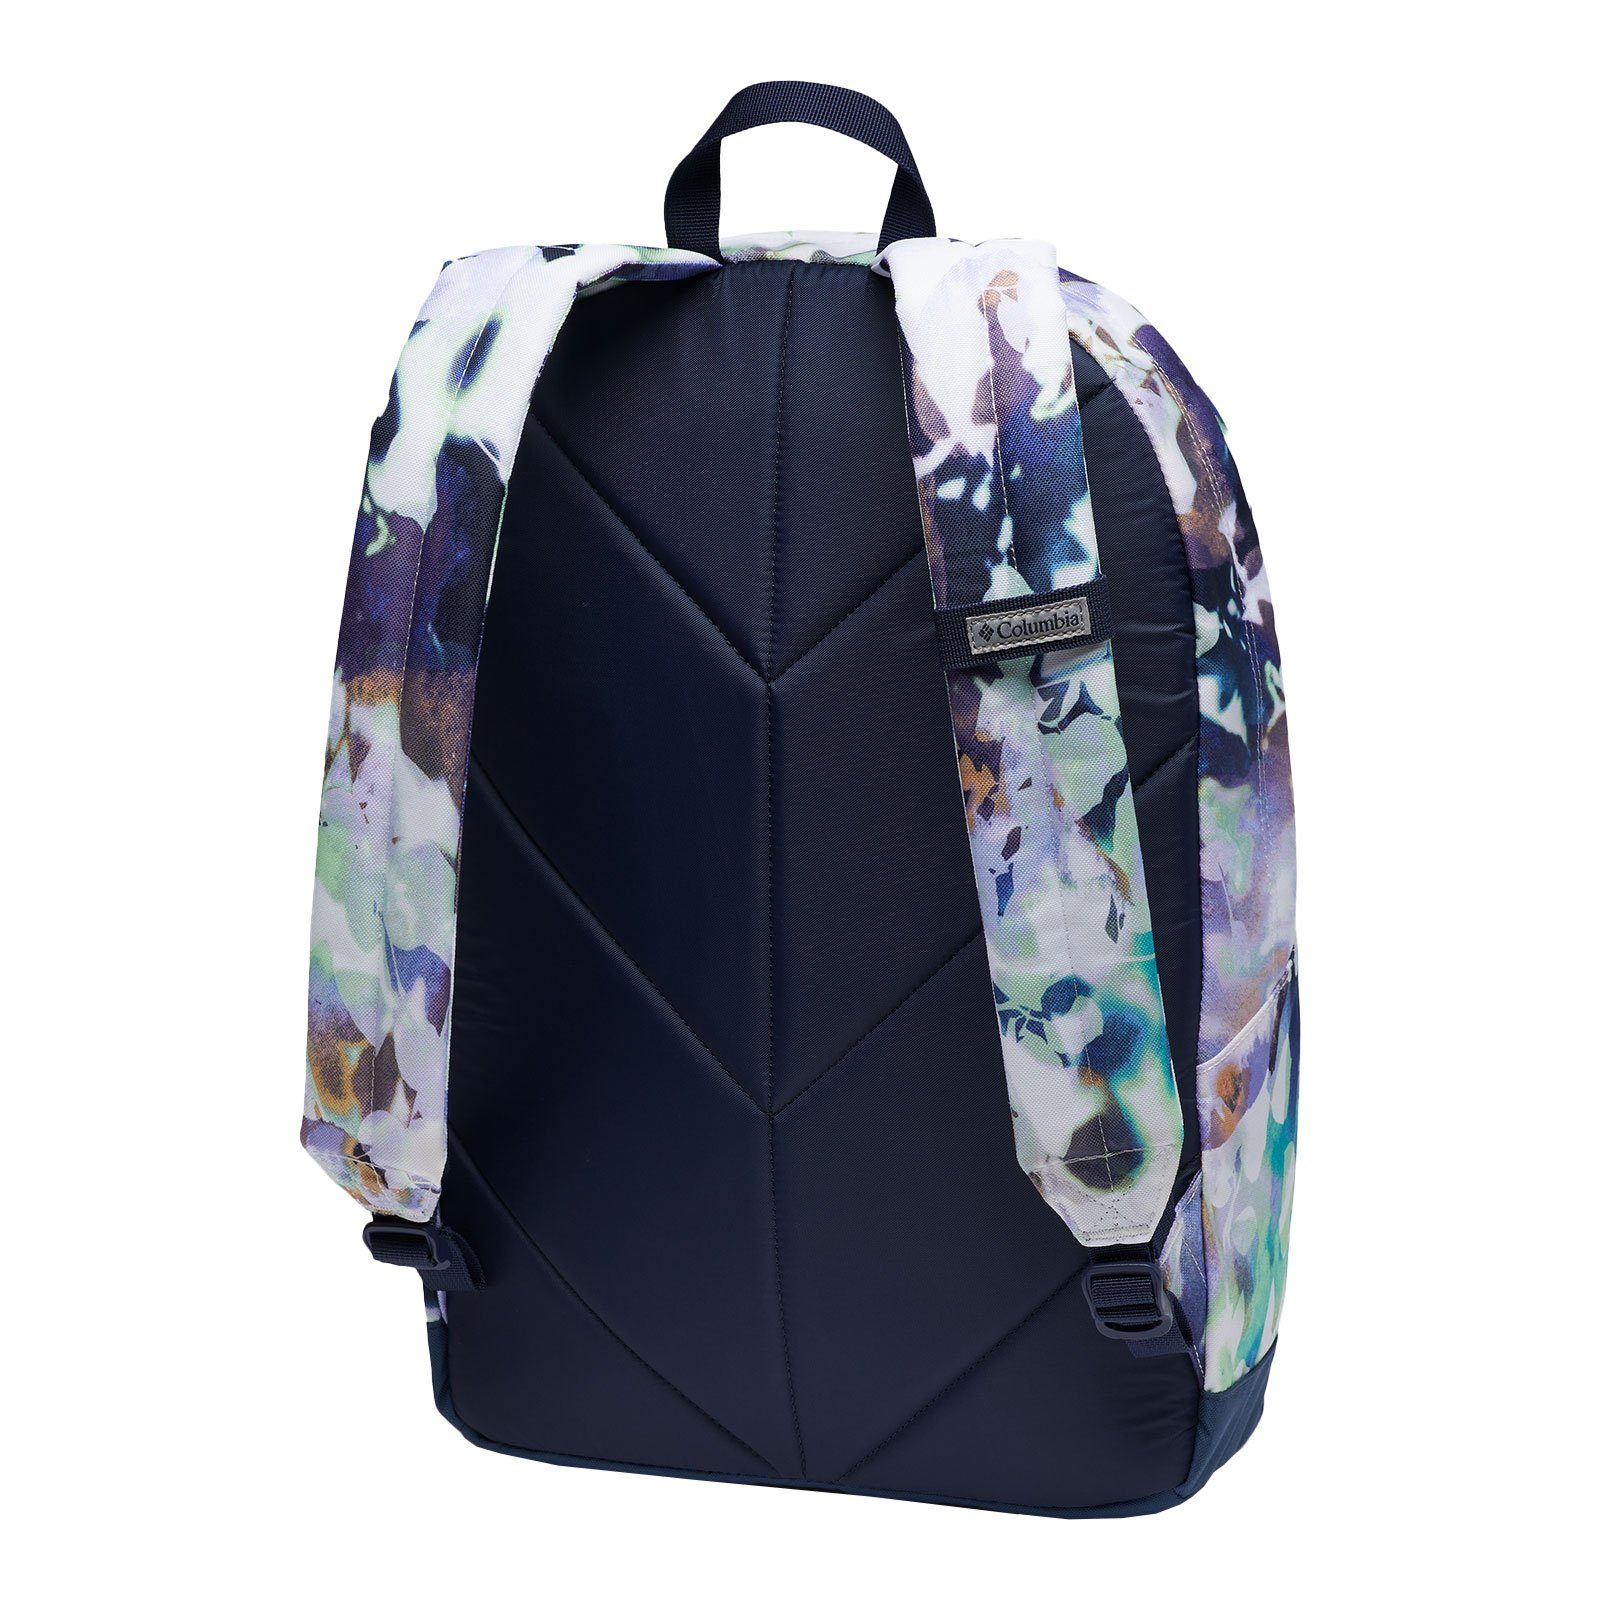 Backpack, Columbia / impressions Freizeitrucksack 22L nocturnal mit Zigzag™ white Laptopfach 102